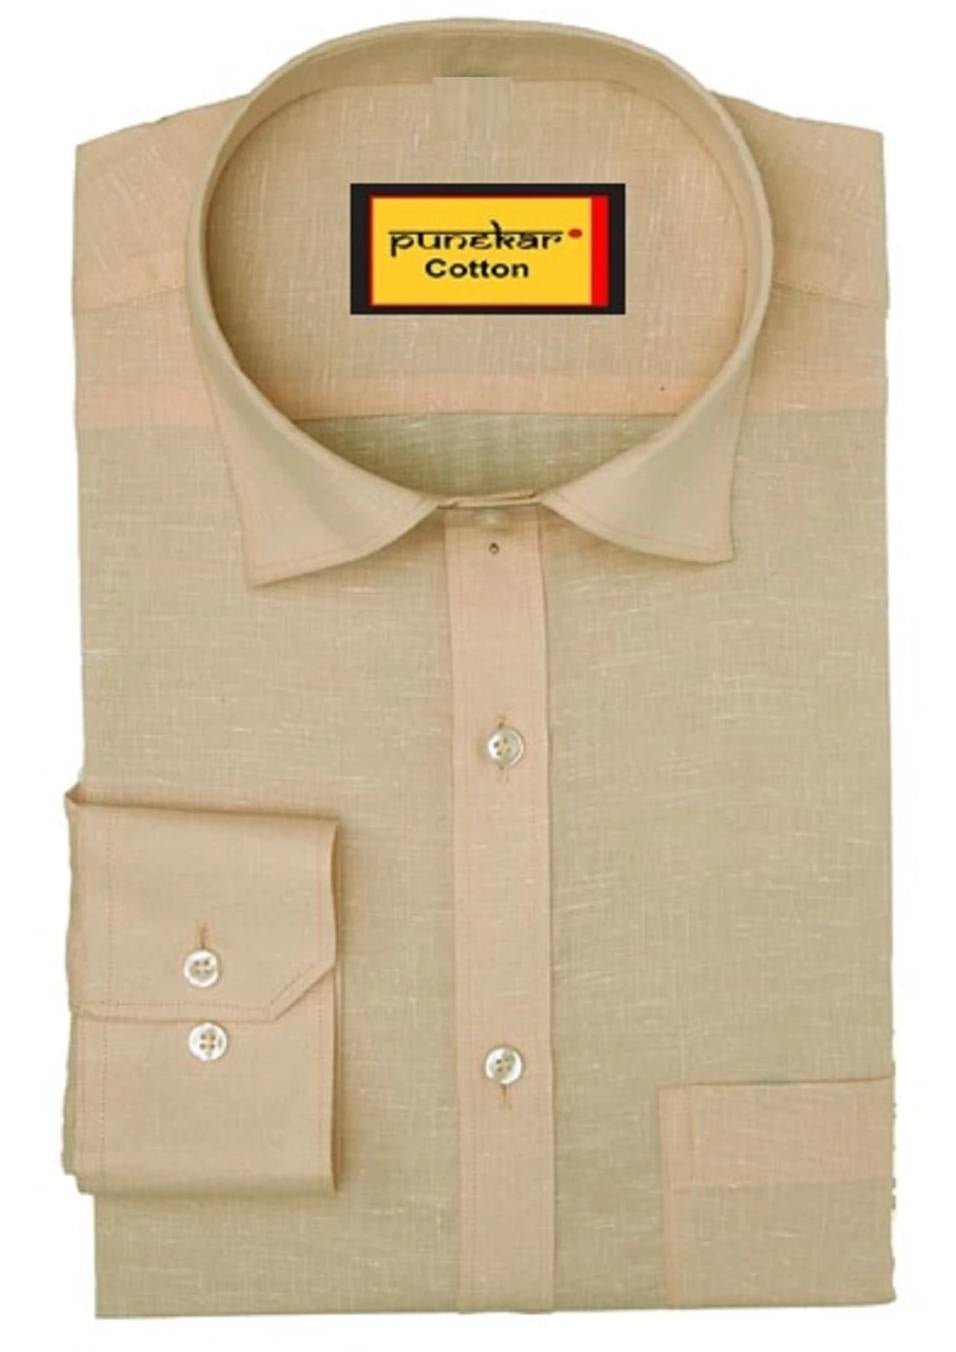 Punekar Cotton Men's Formal Handmade Fon Color Shirt for Men's. - Punekar Cotton